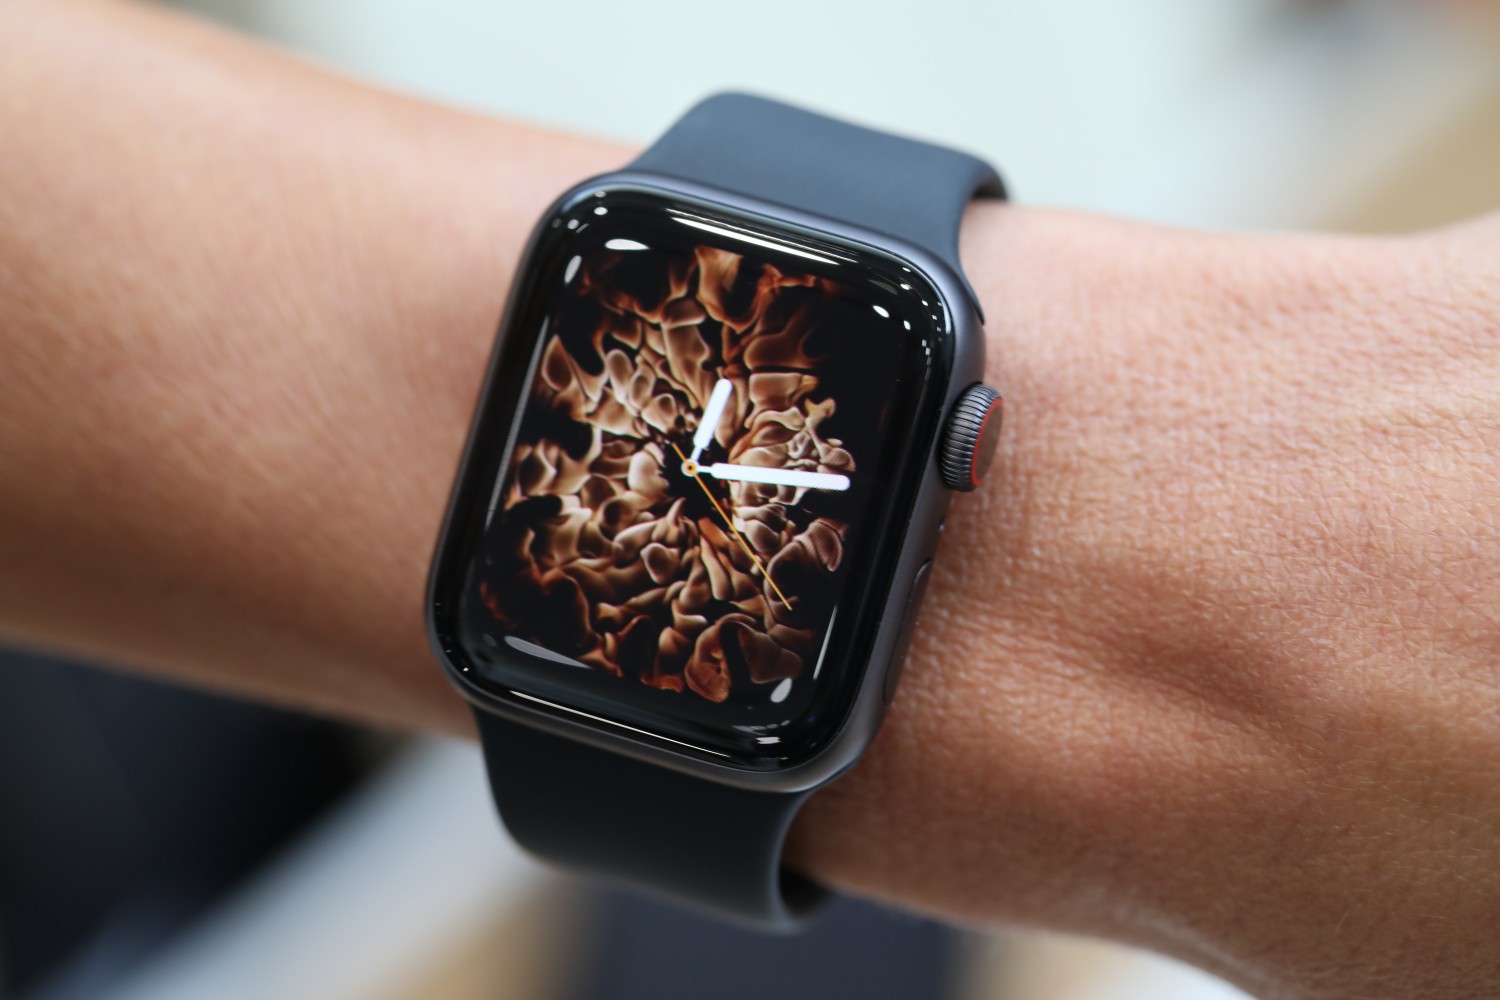 Apple Watch Series 4 có đáng để bạn "dốc hầu bao"?